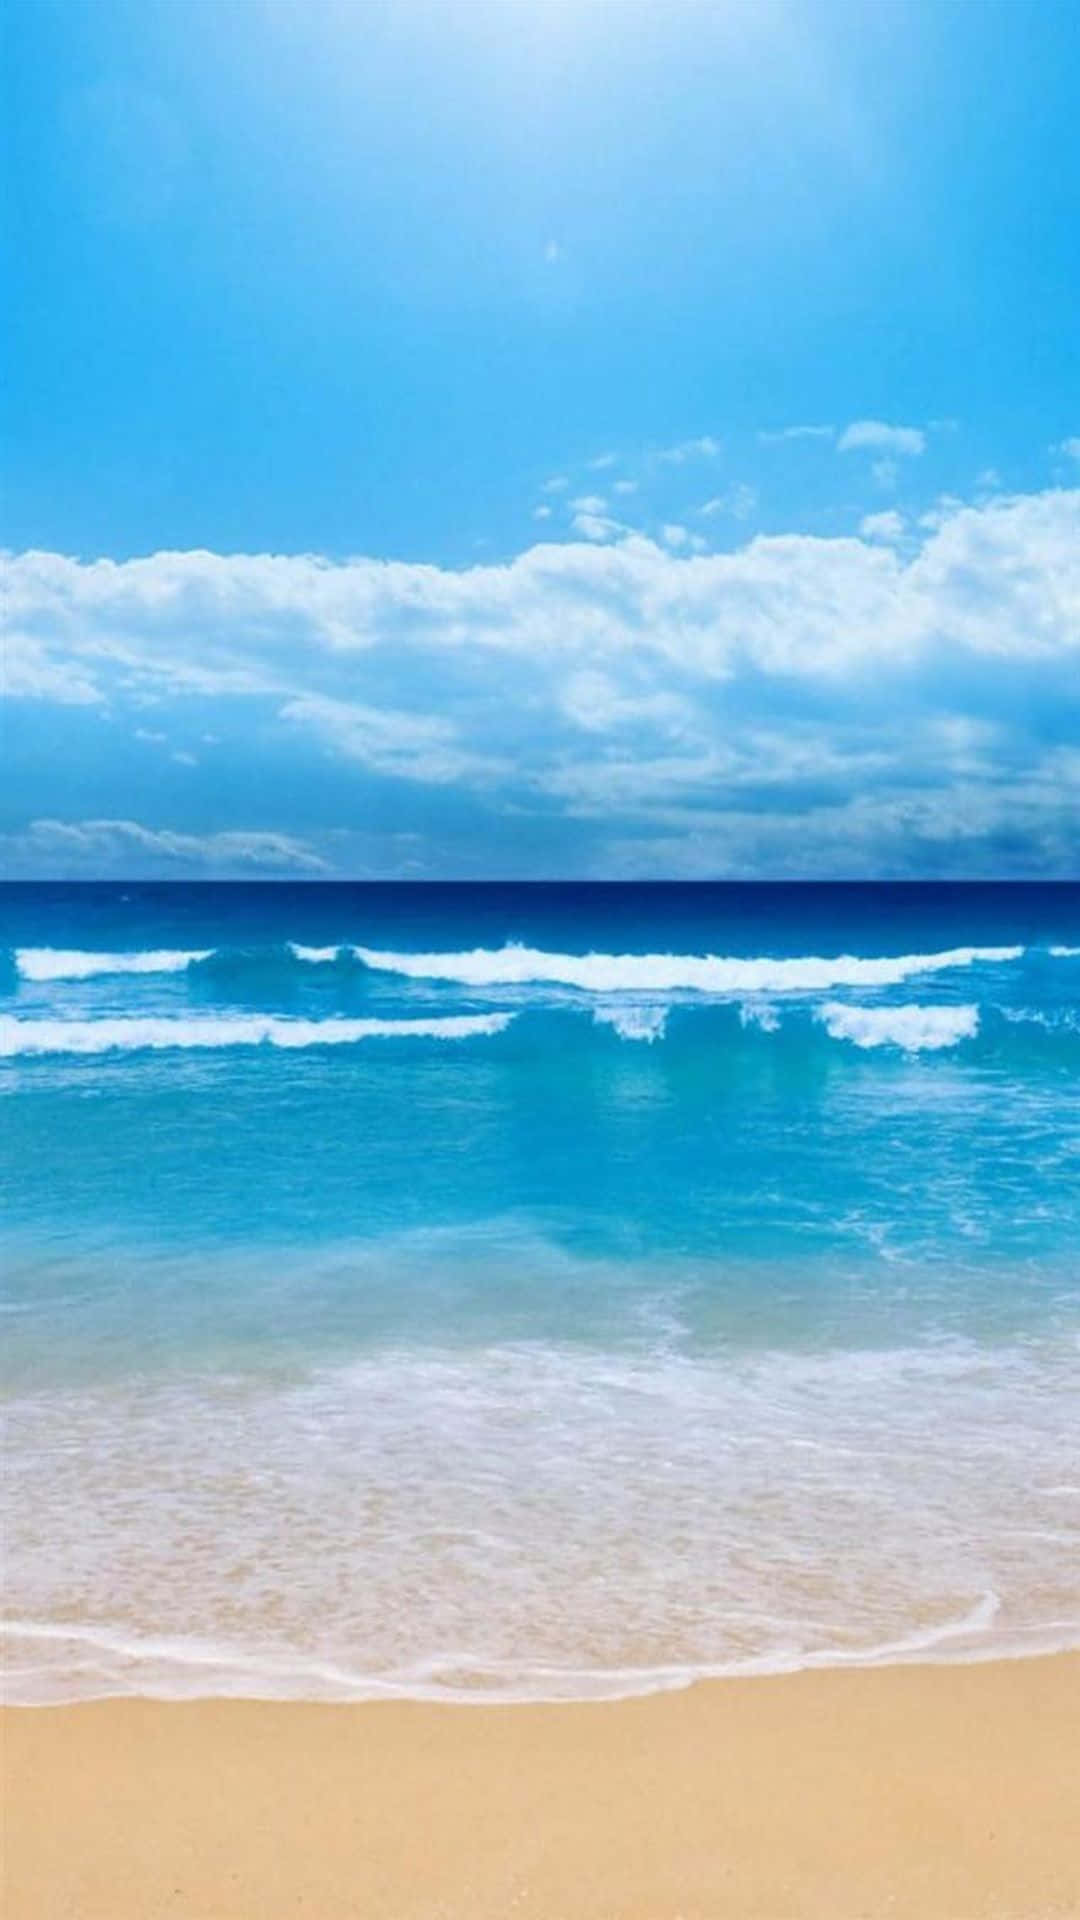 Scollegatidalla Routine Quotidiana E Rilassati Durante La Tua Prossima Vacanza Al Mare Con Beach Phone! Sfondo